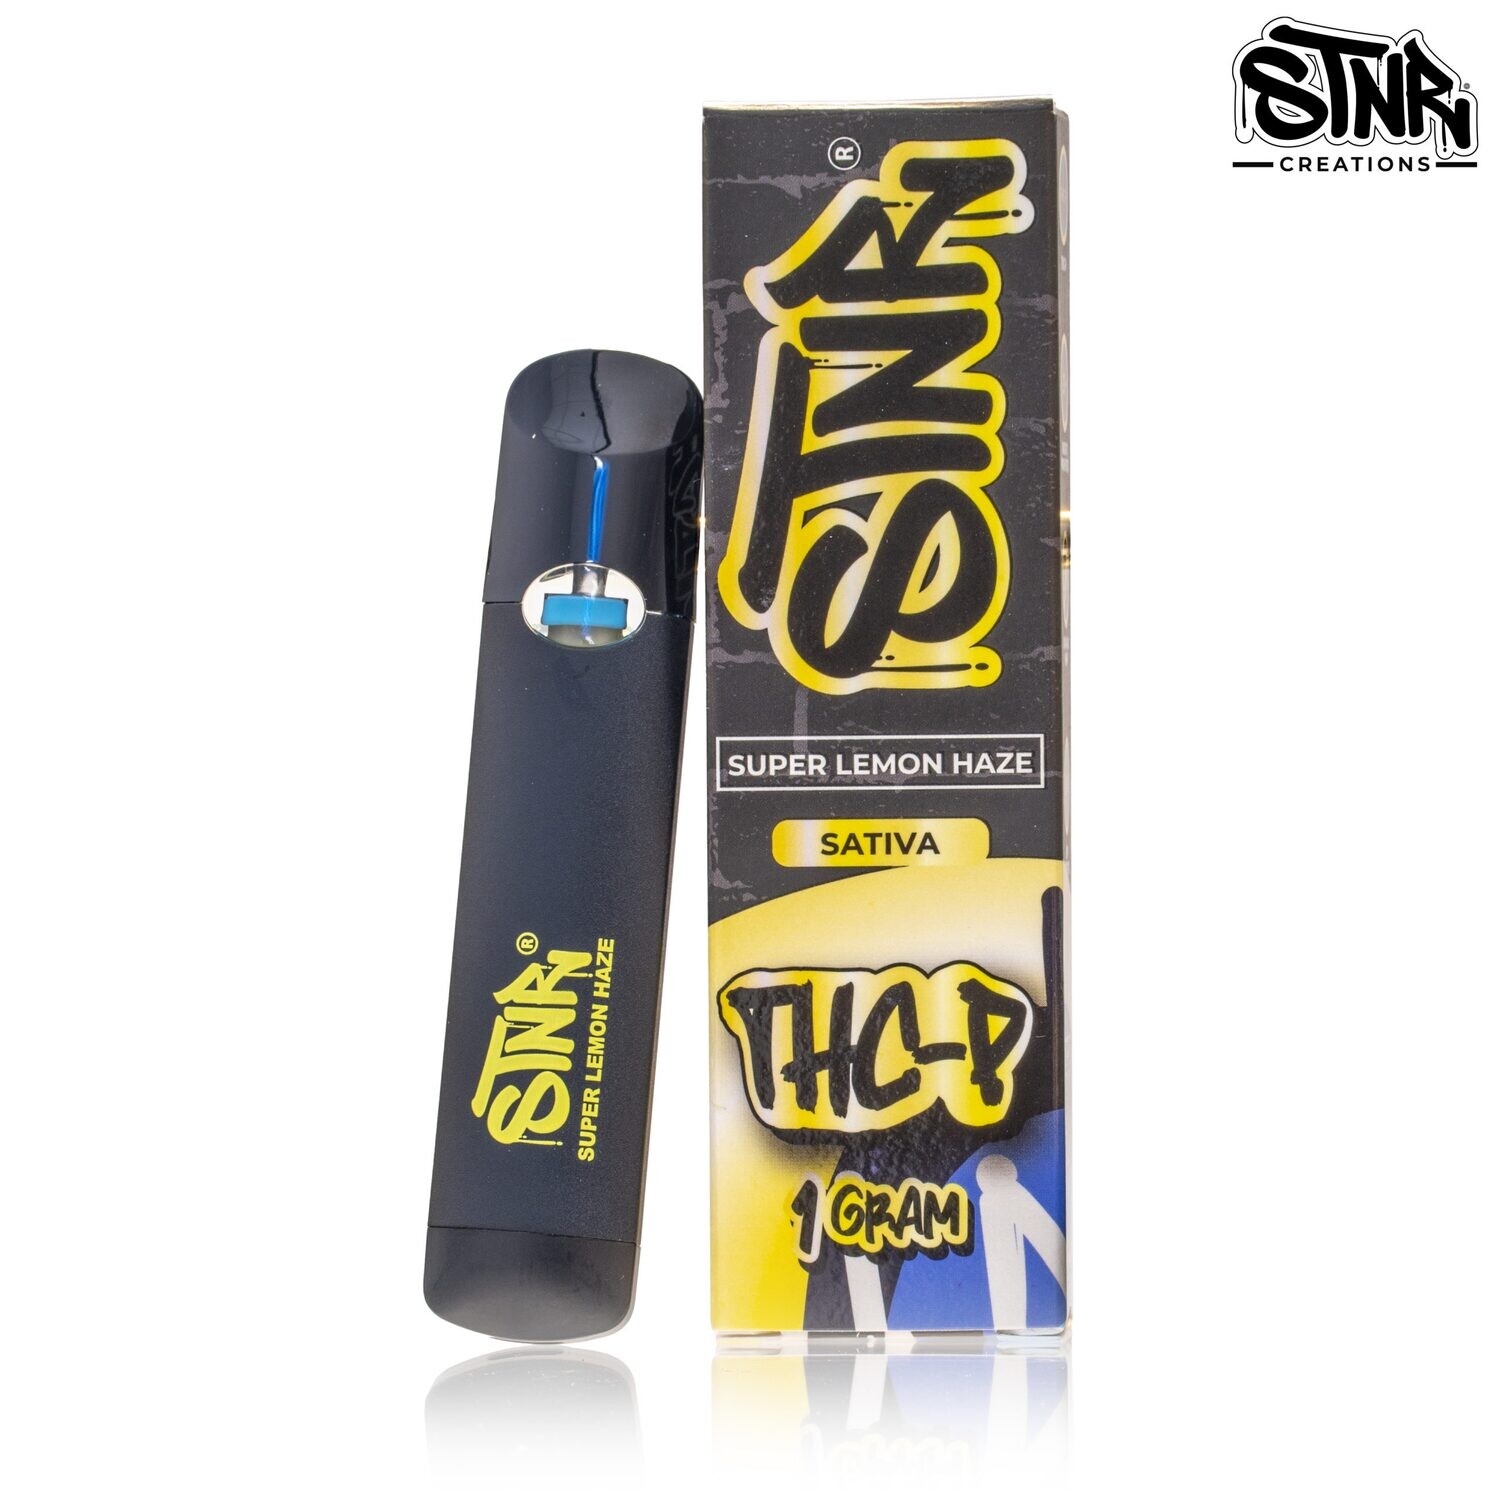 DISP - STNR Super Lemon Haze THC-P 1g